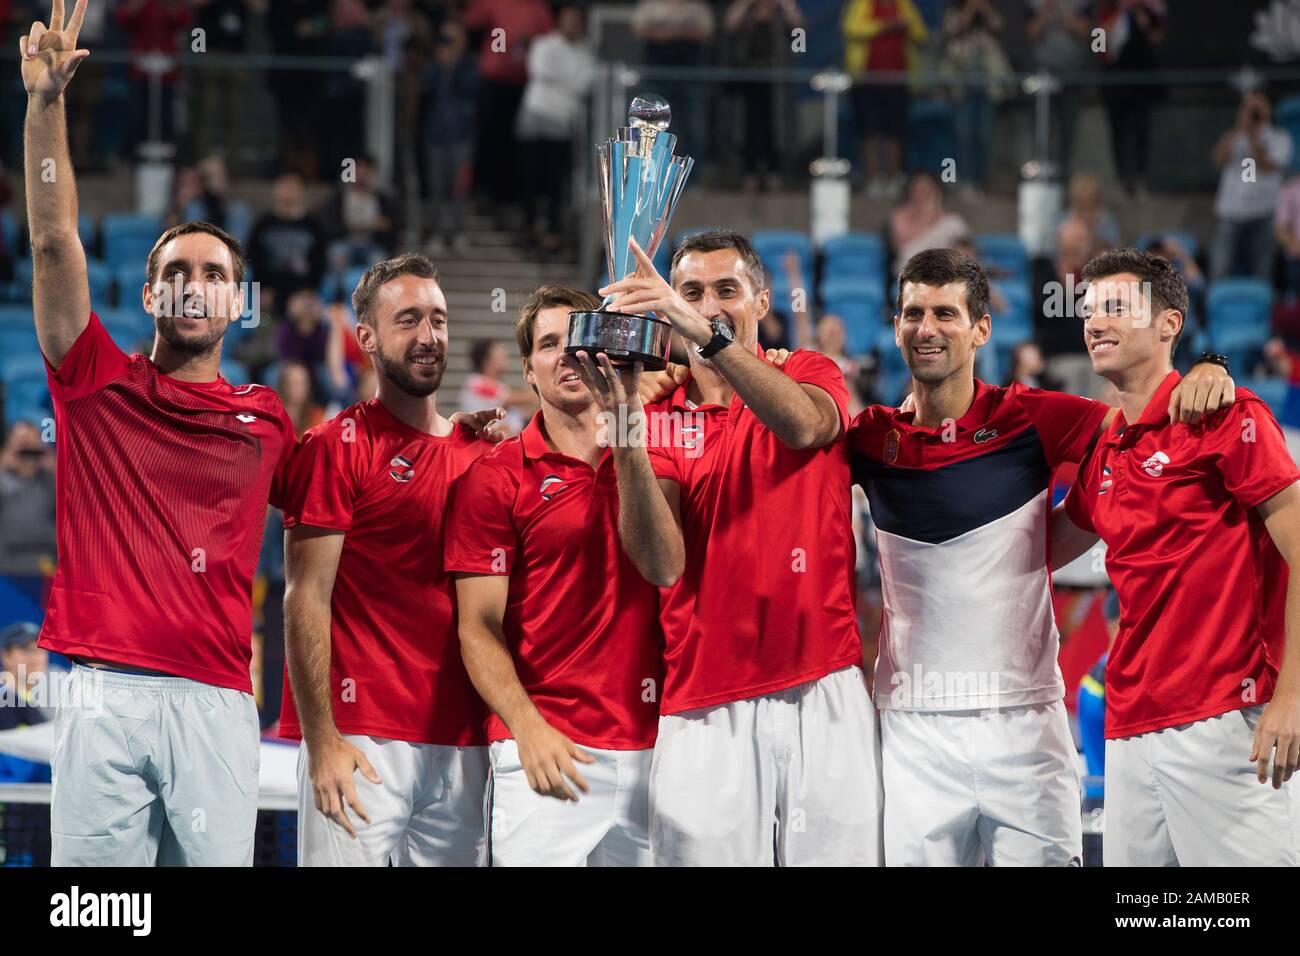 La Serbie célèbre après avoir battu l'Espagne 2-1 lors de la finale de la coupe ATP 2020 à la Ken Rosewall Arena, Sydney, Australie, le 12 janvier 2020. Photo De Peter Dovgan. Banque D'Images